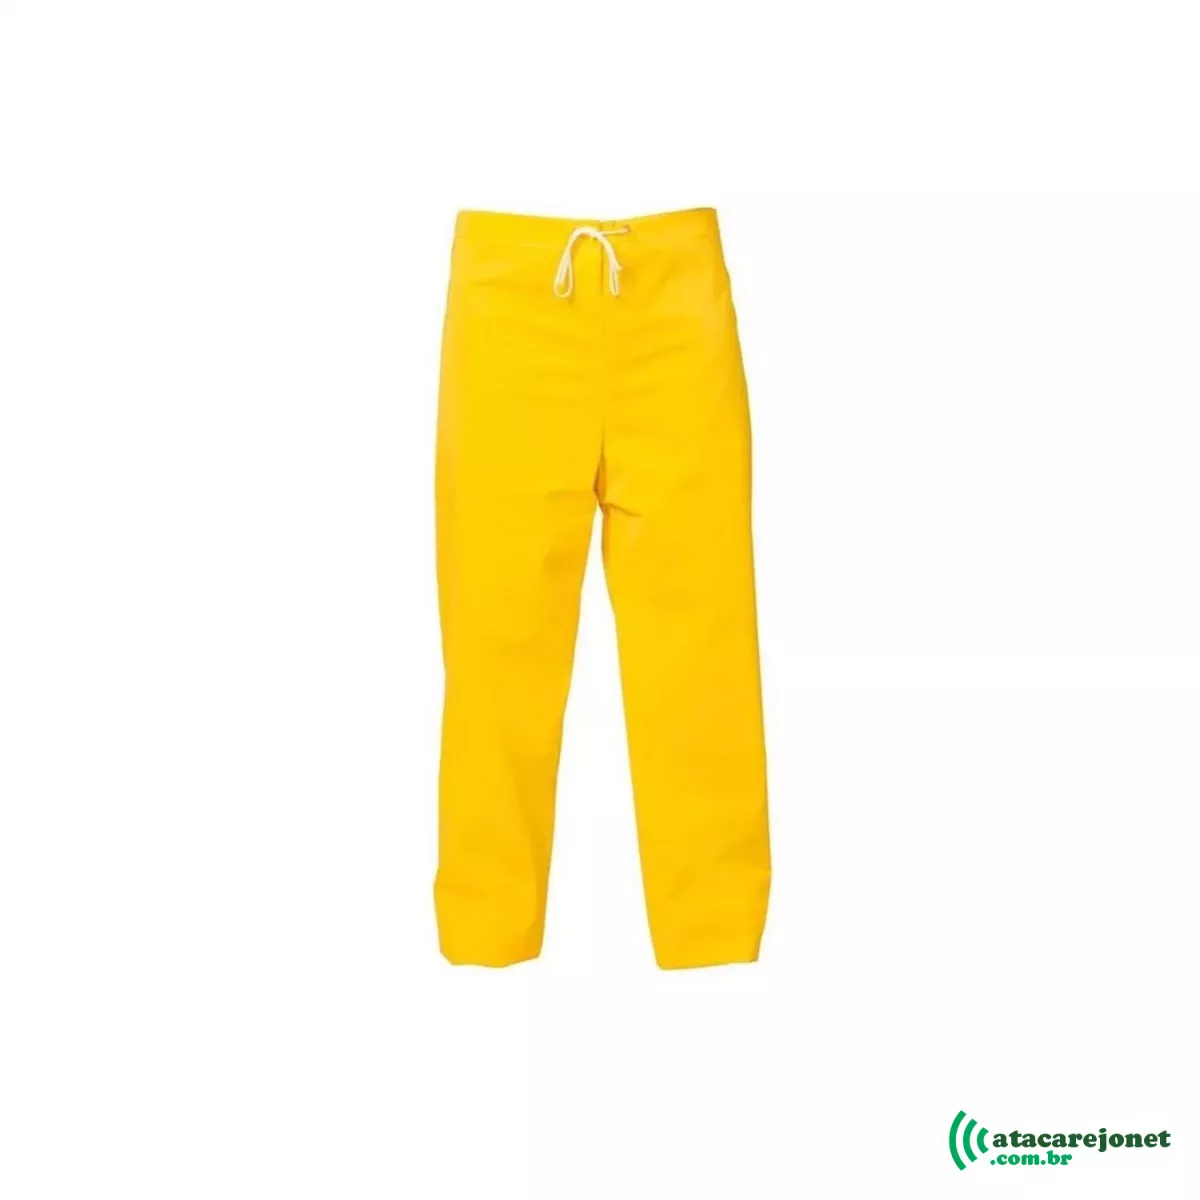 Calça PVC Forrada Amarela XG - Maicol